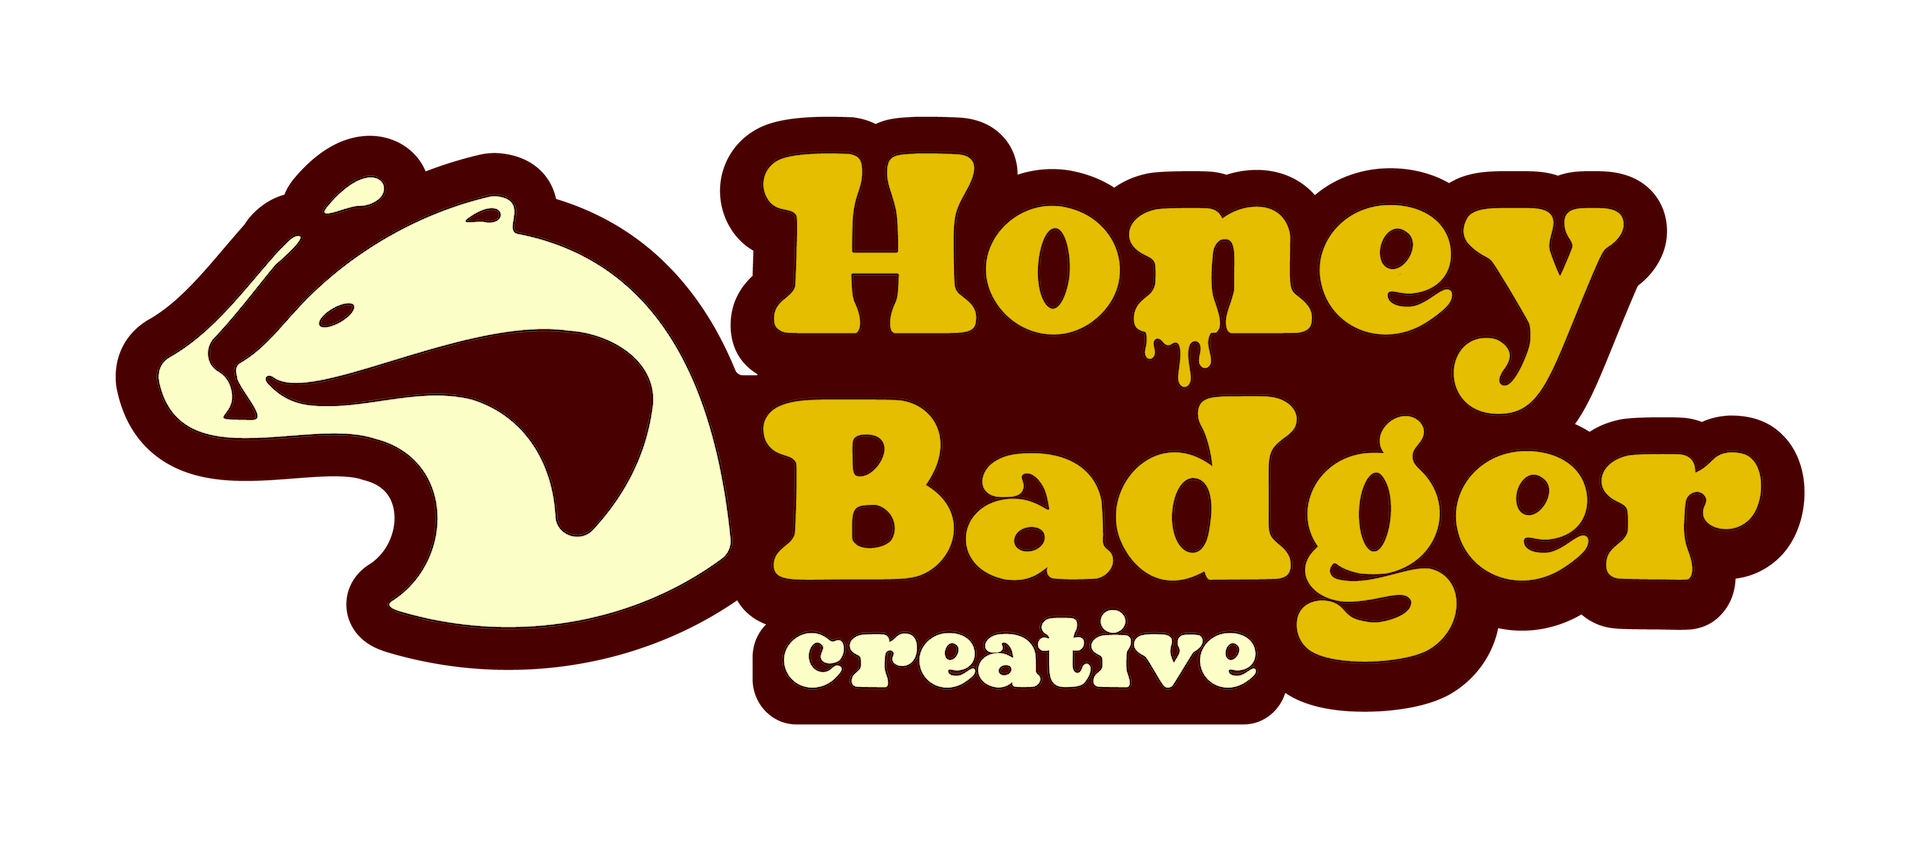 logo for Honey Badger Creative